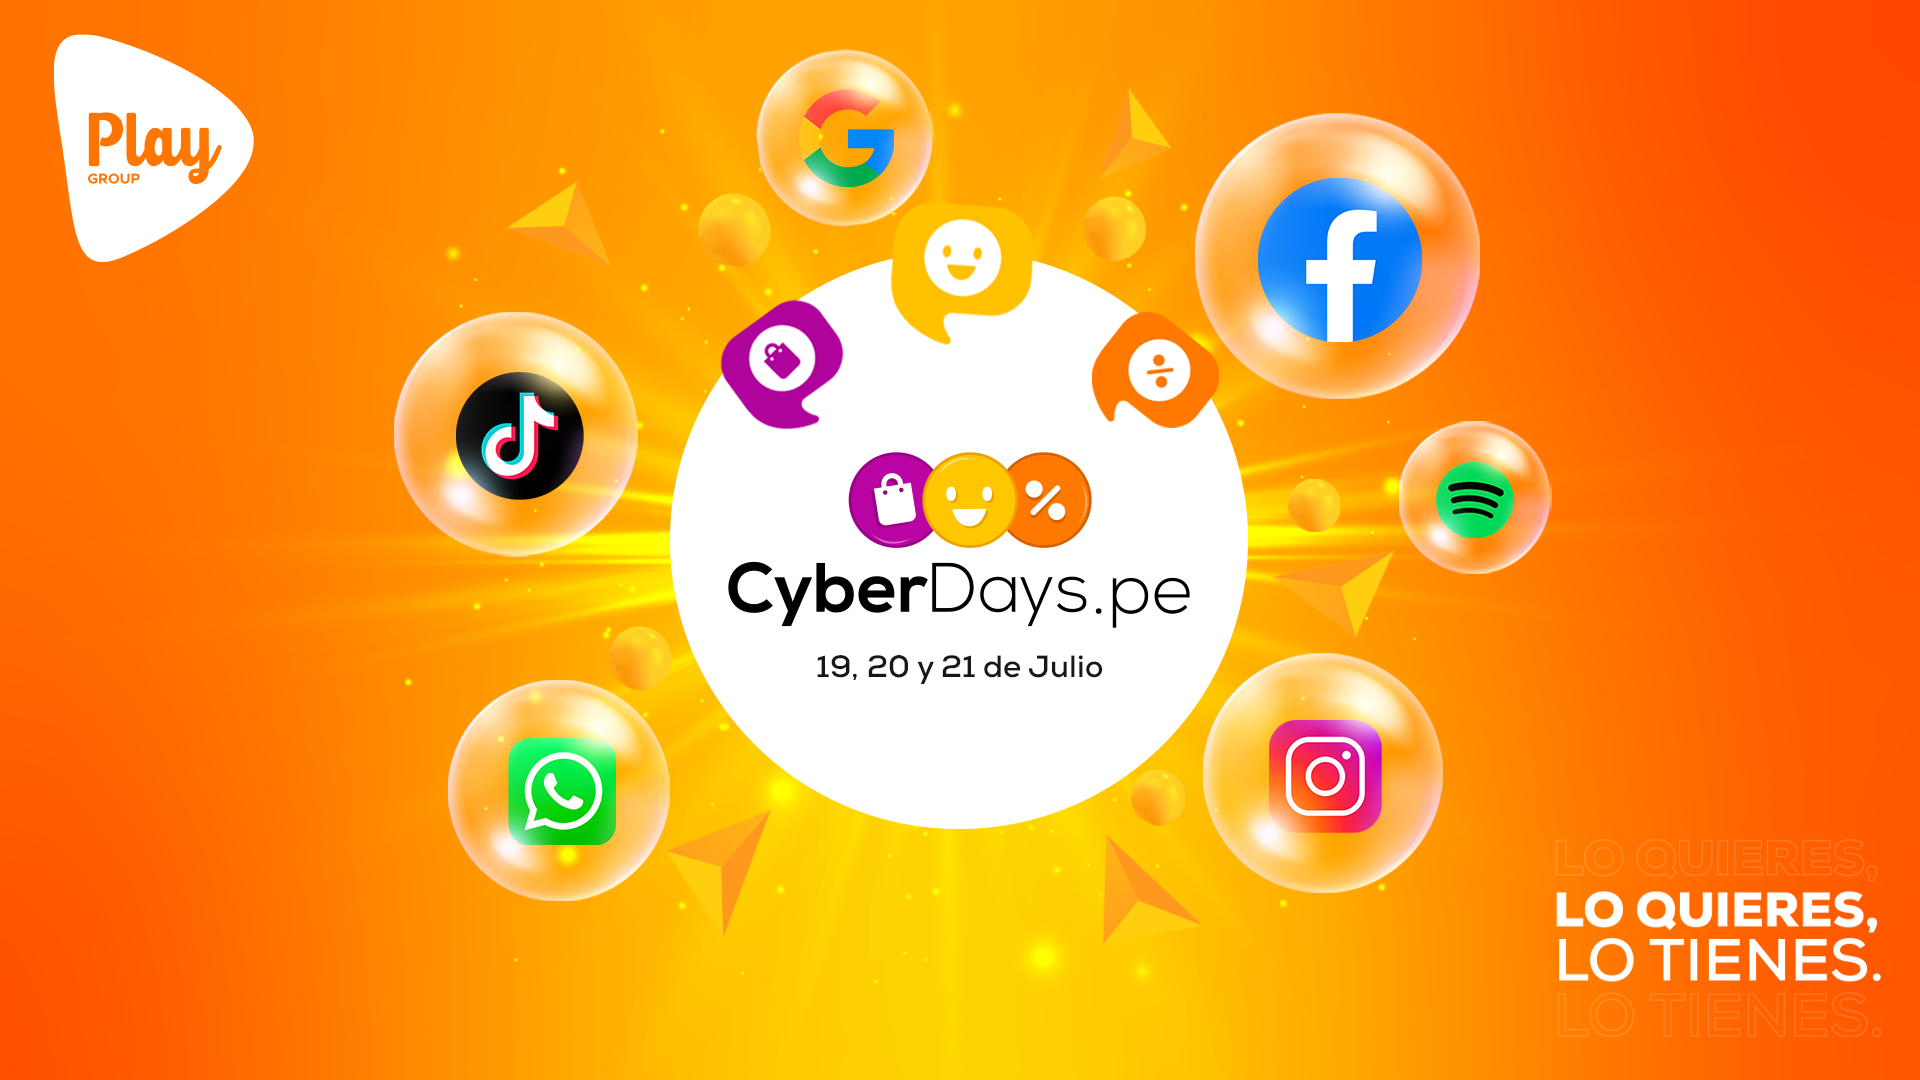 Play Group planea que los Cyberdays lleguen a 4 millones de peruanos